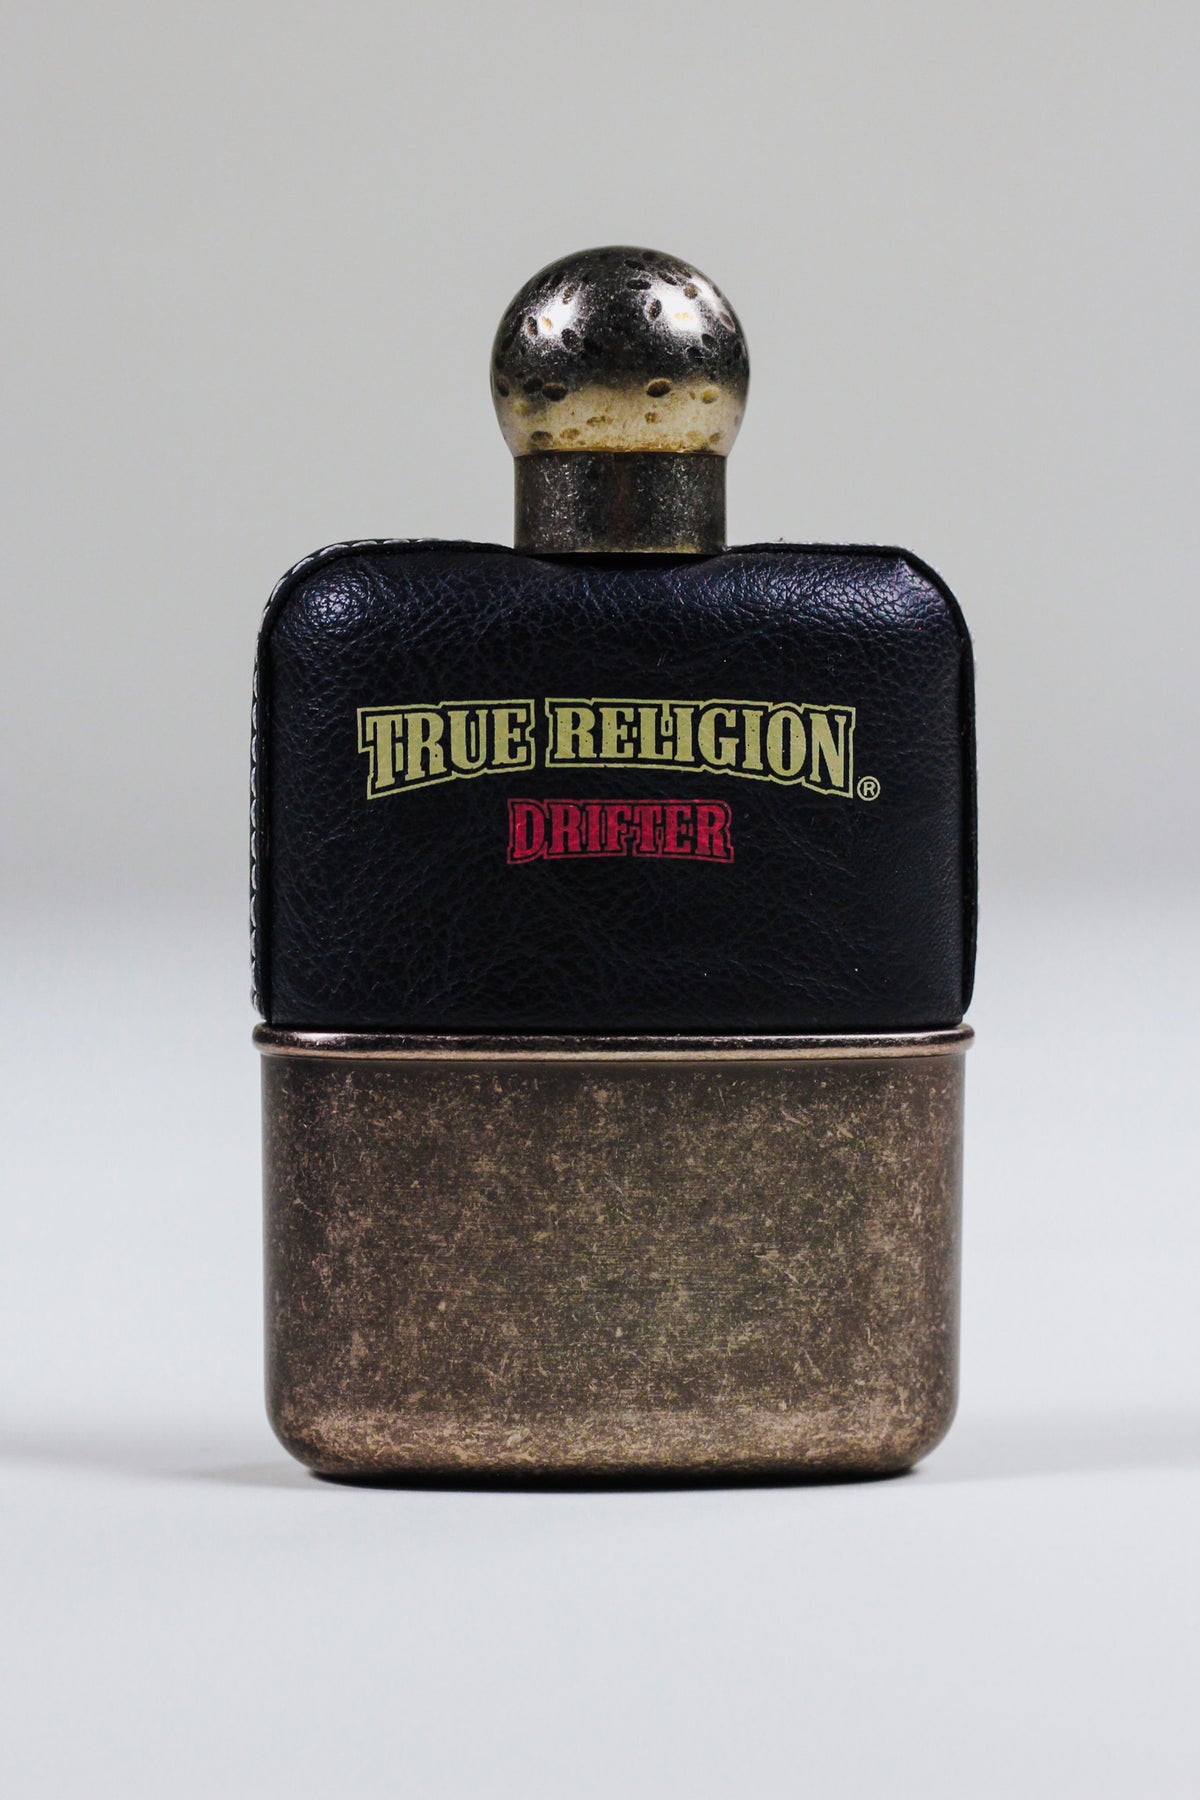 True Religion Drifter Eau De Toilette